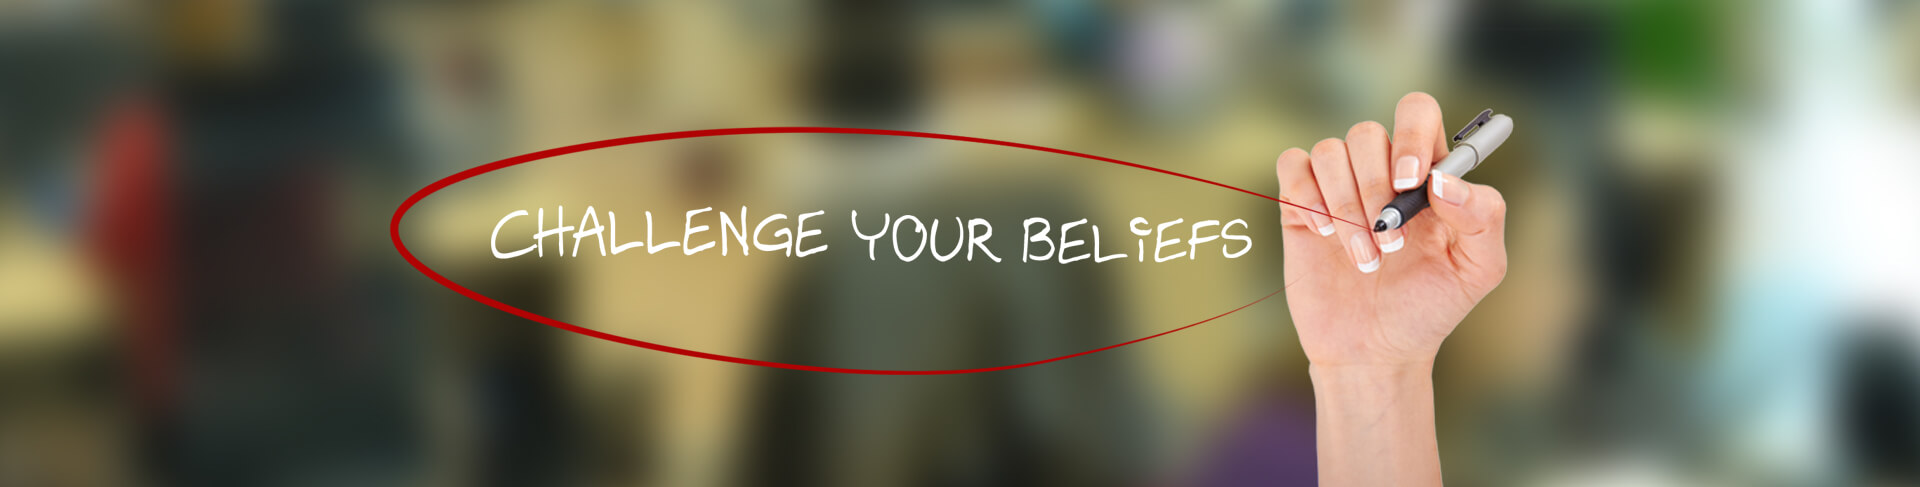 challenge-your-beliefs